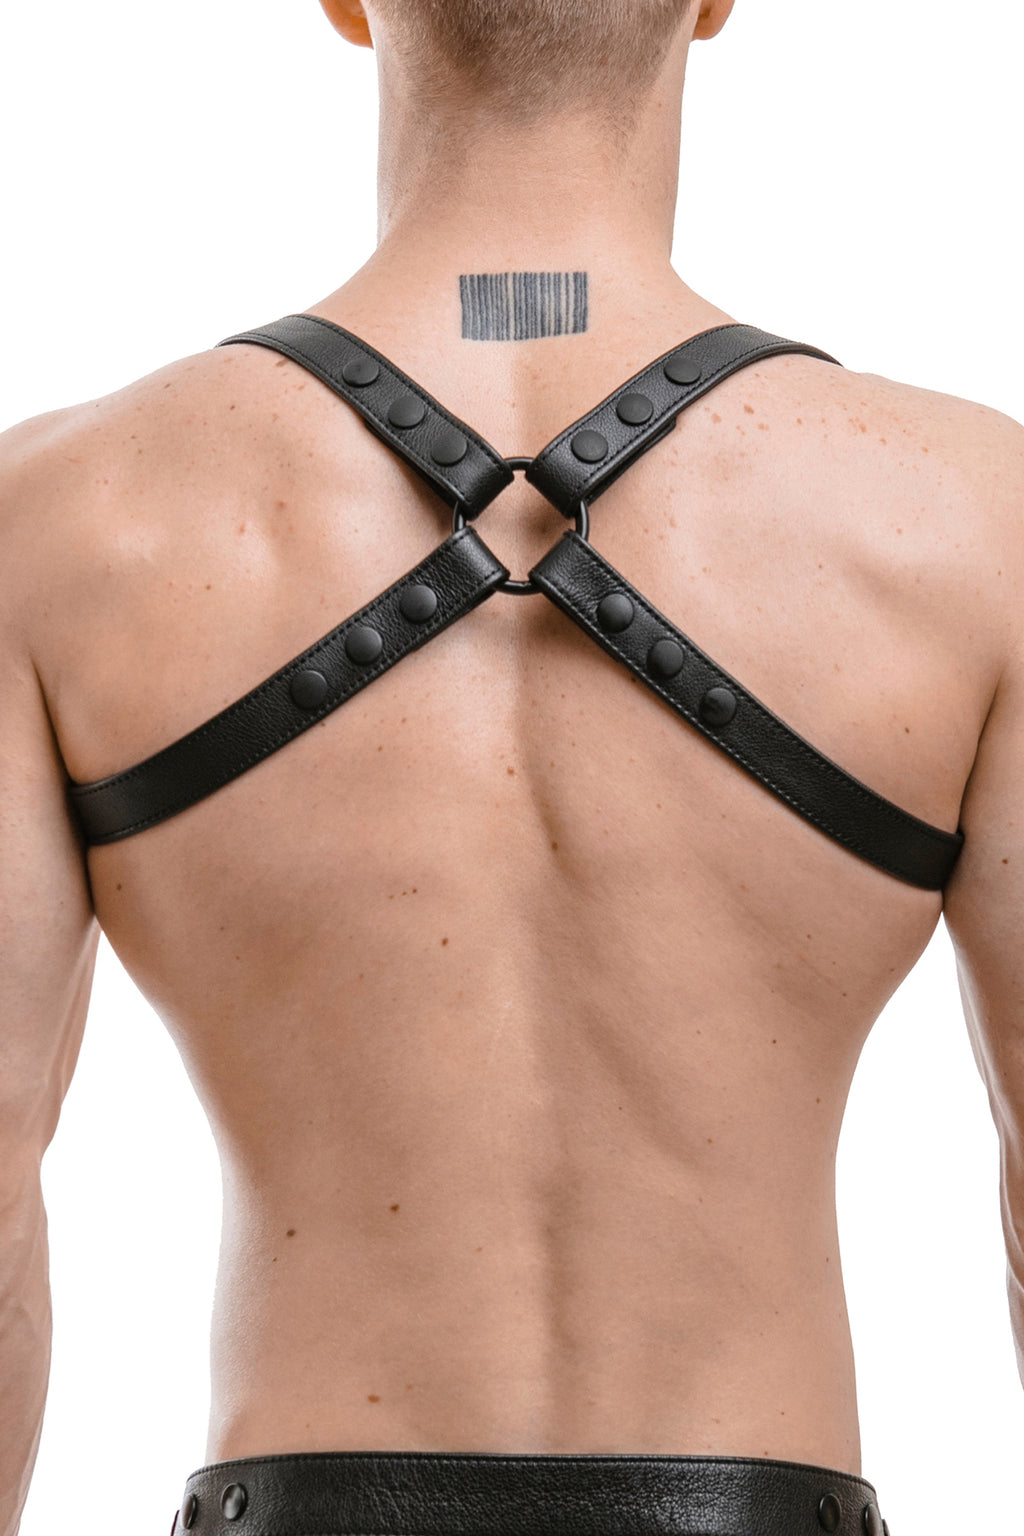 https://armyofmen.com/cdn/shop/products/harness-shoulder-black-matt-model-back-gay-leather-fetish-kink_1024x.jpg?v=1561541588